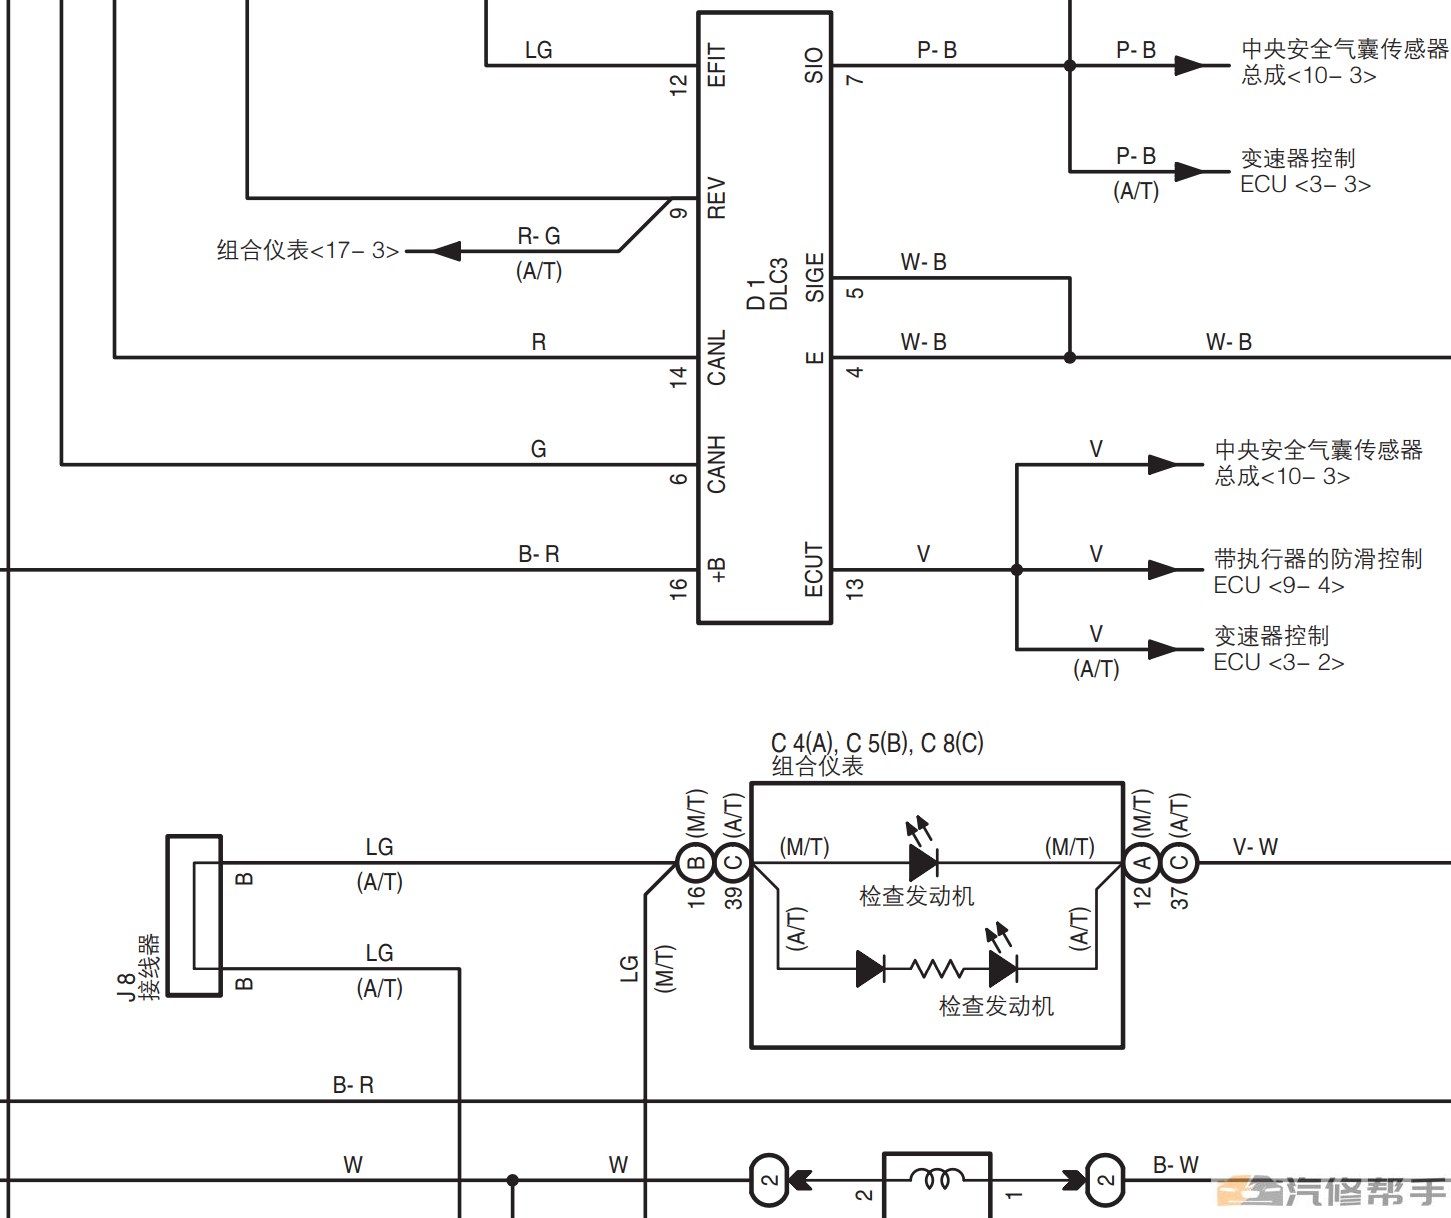 2009-2010年款一汽森雅M80原厂维修手册电路图线路图资料下载